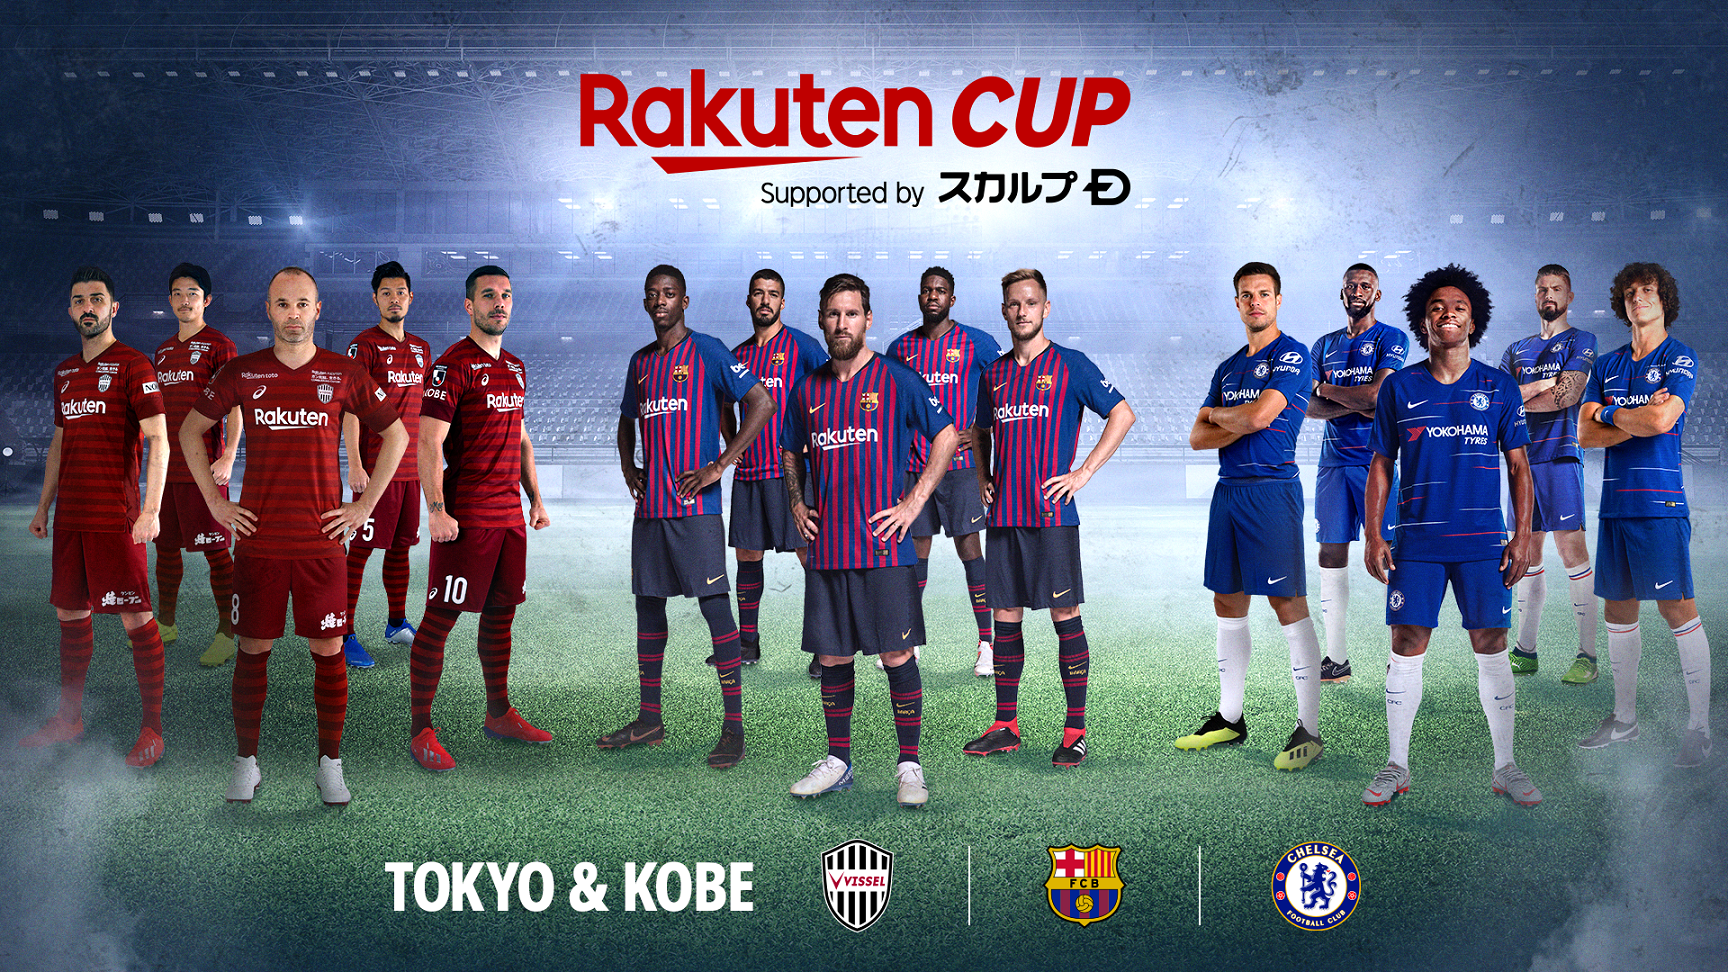 楽天 動画配信サービス Rakuten Tv と Rakuten Sports において 7月に開催される Rakuten Cup のライブ配信 を決定 楽天株式会社のプレスリリース